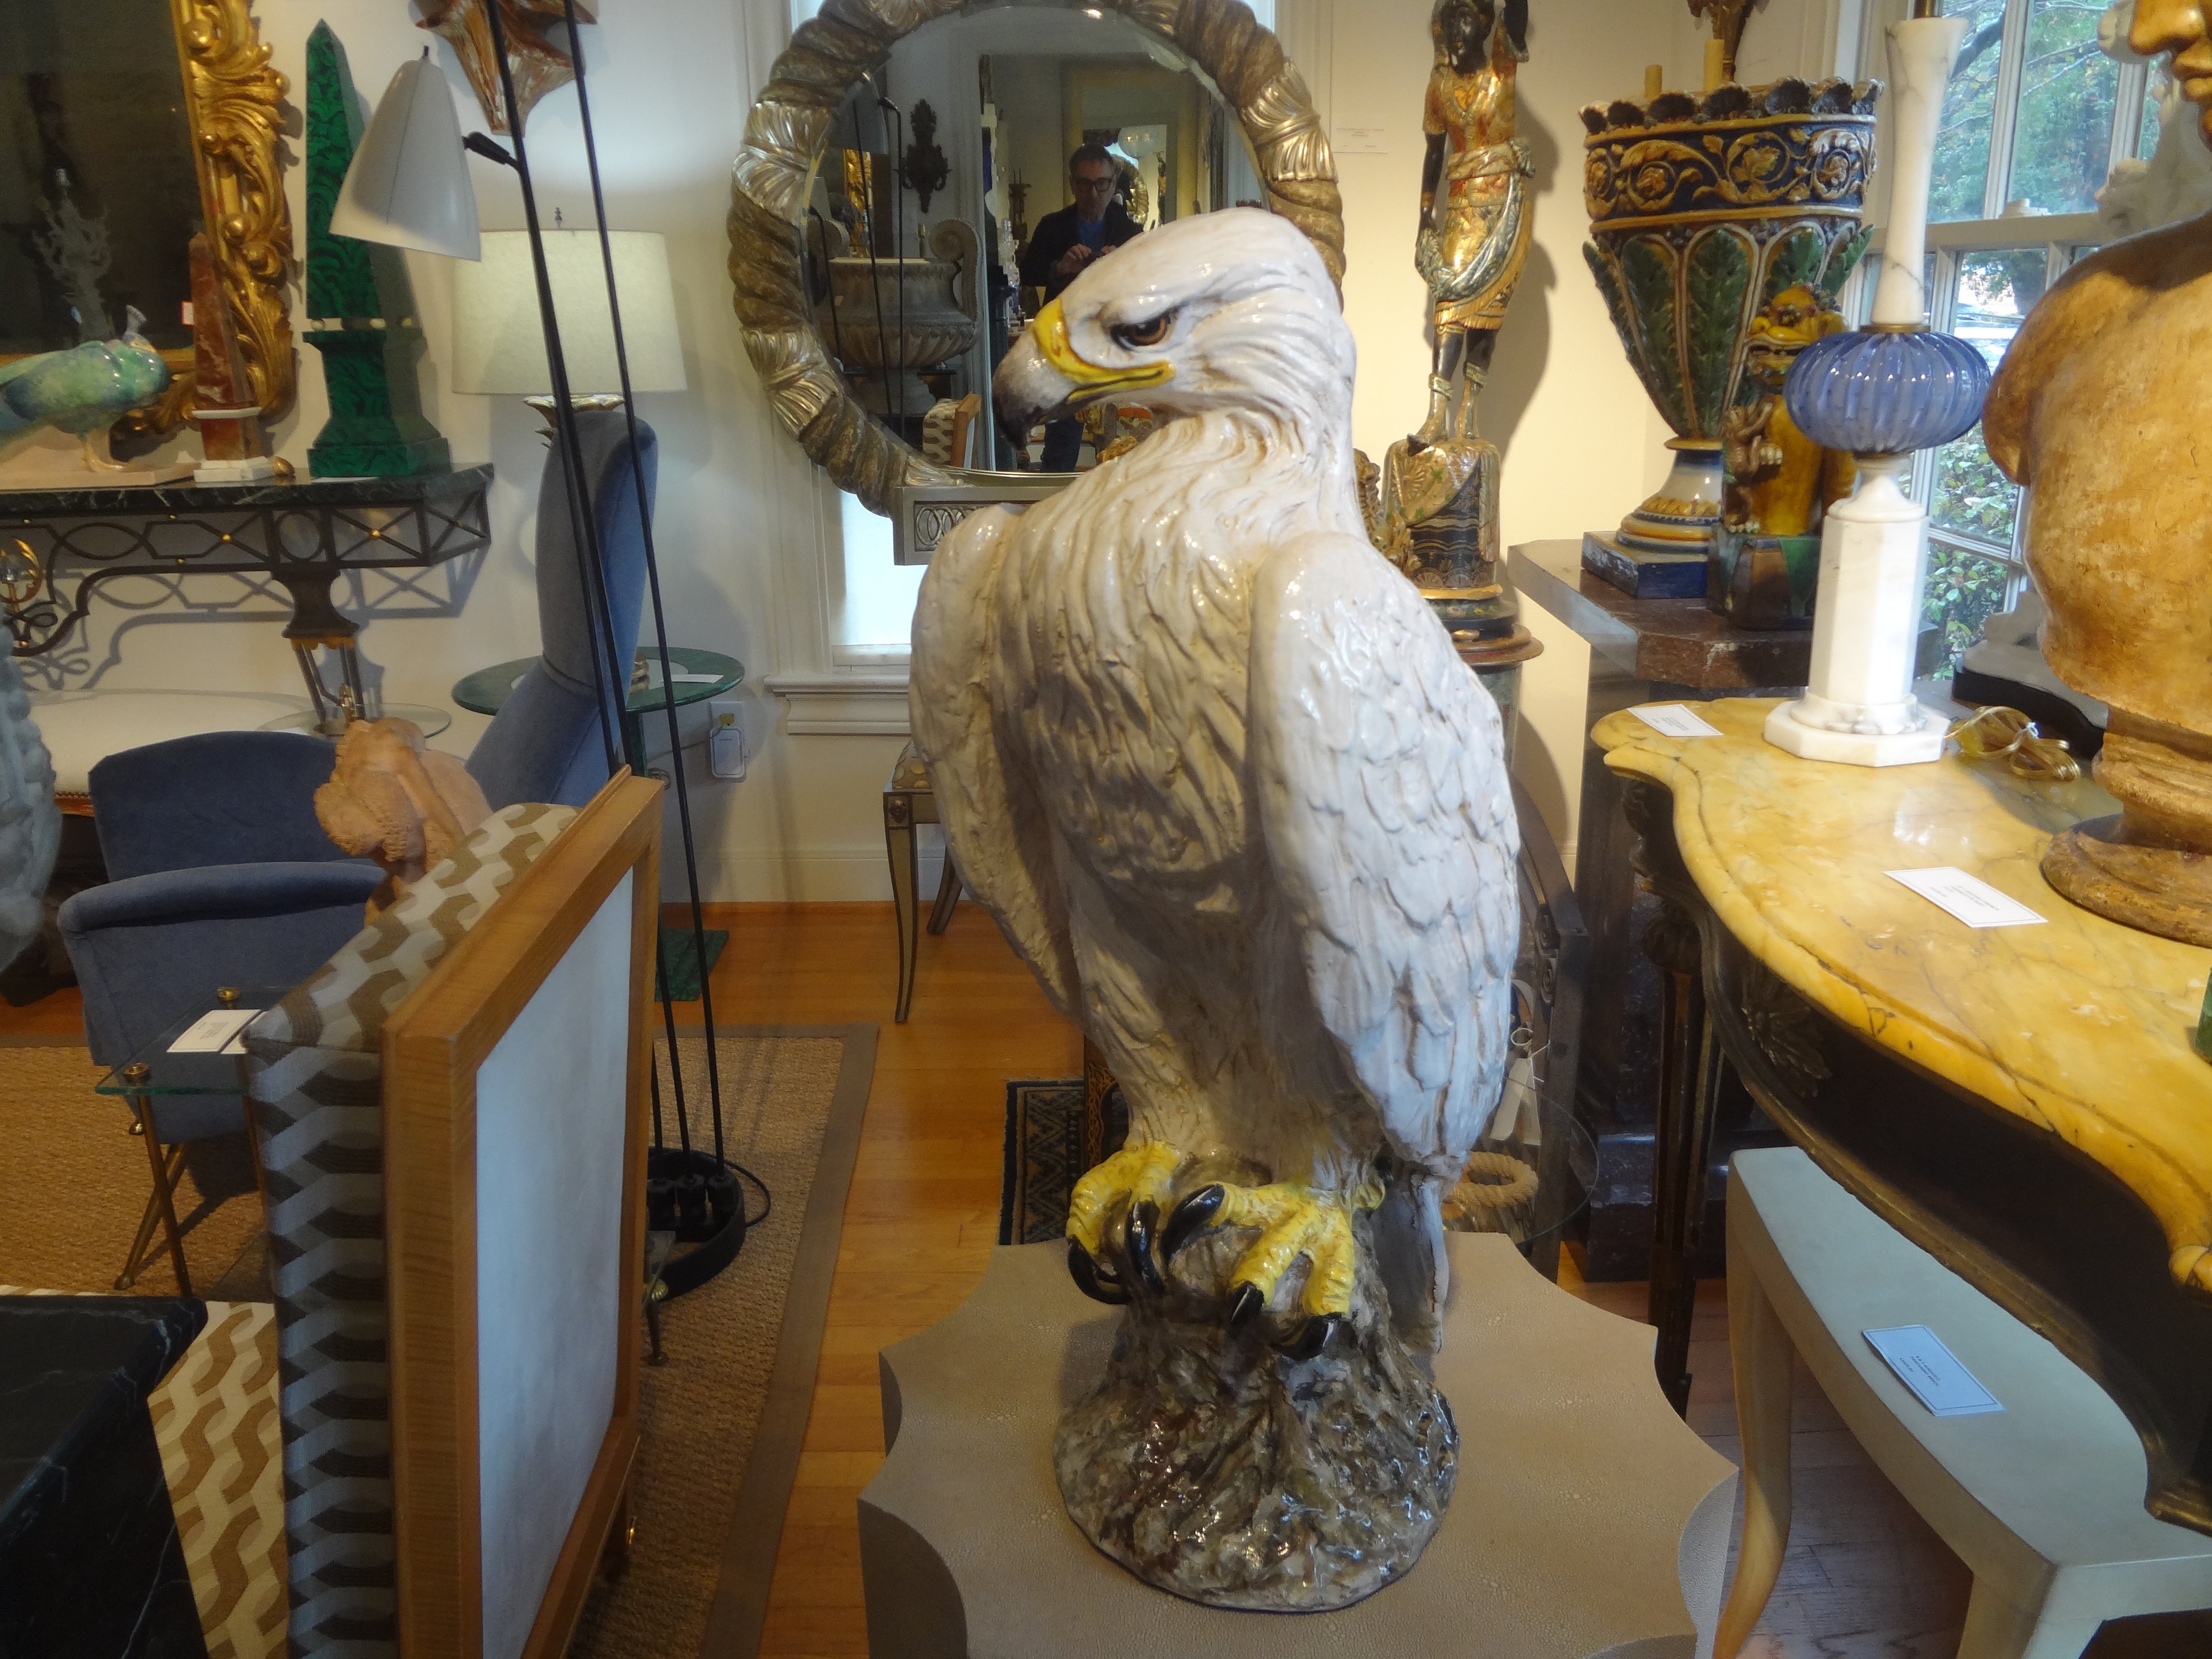 Vintage Italian Terracotta Glazed Eagle Sculpture.
Cette figurine ou sculpture d'aigle italien de la Régence hollywoodienne, grandeur nature, est exécutée de manière experte dans des couleurs réalistes.
Notre sculpture italienne est en très bon état